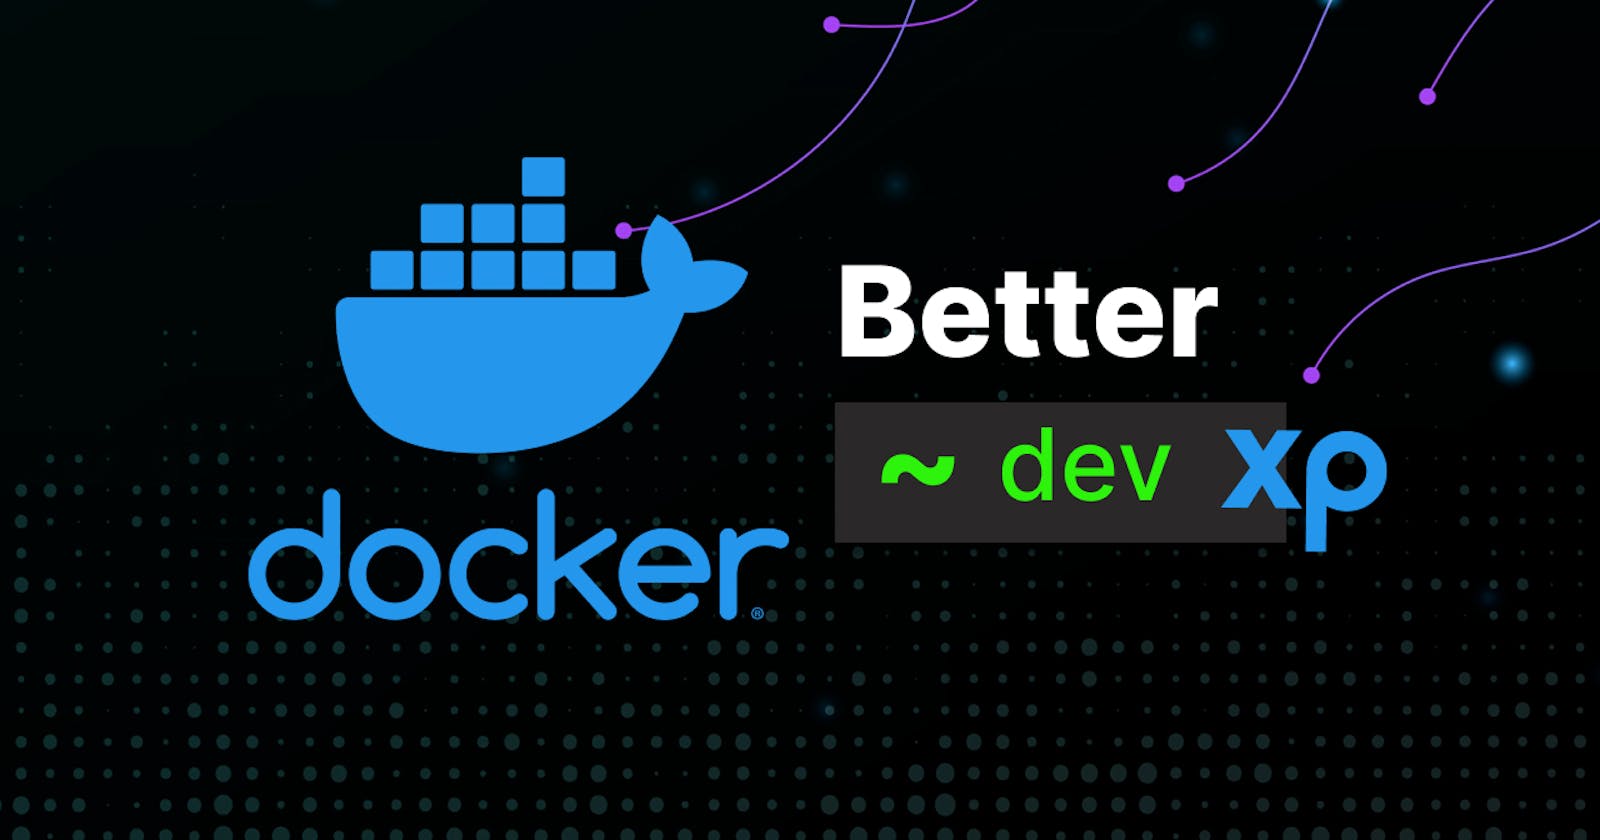 Docker tips for better Developer Experience